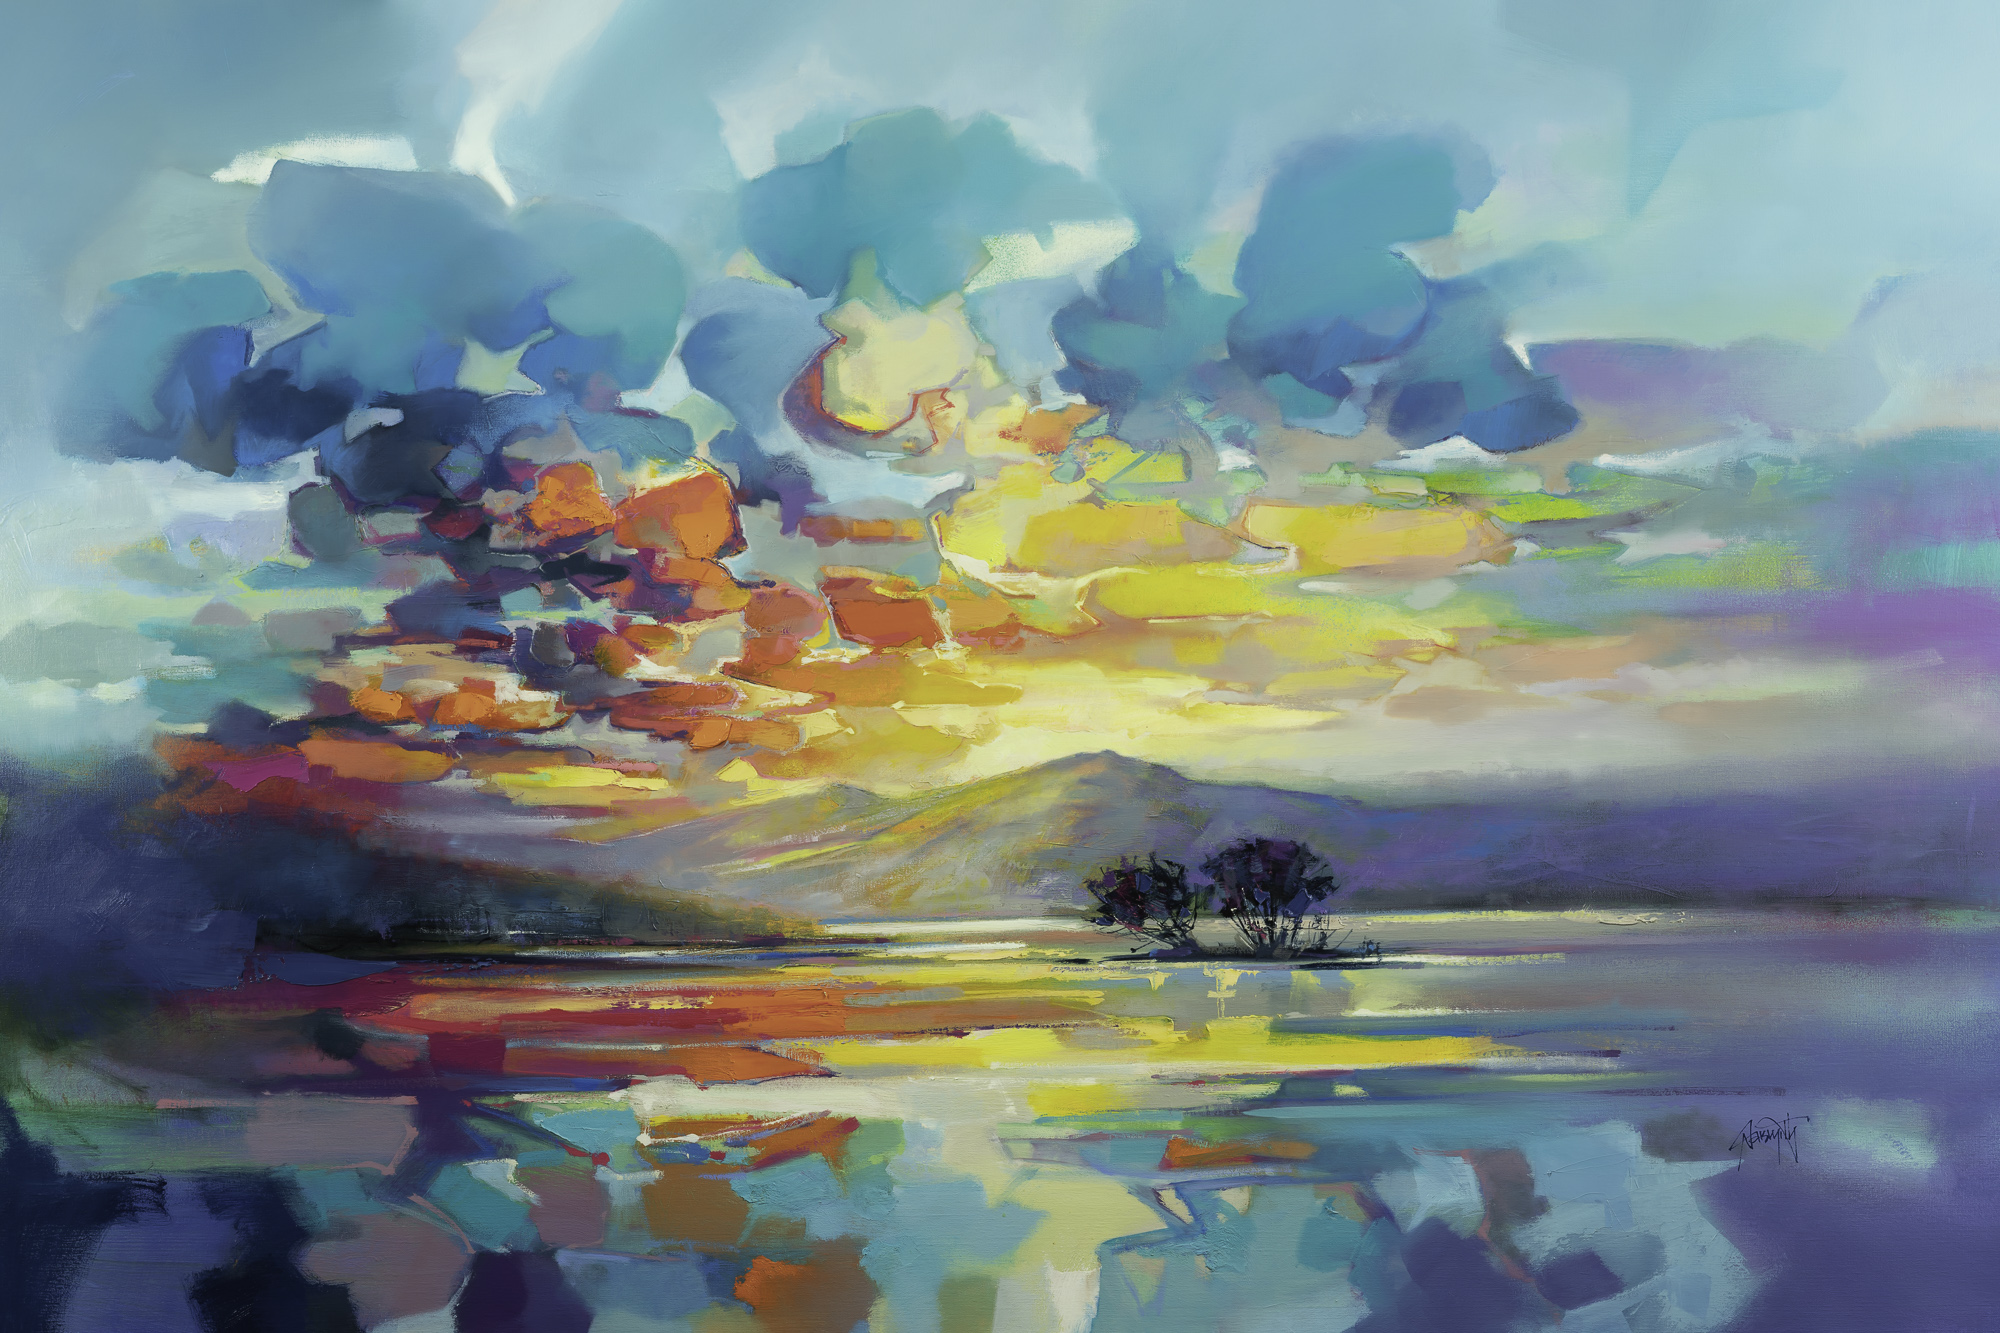 'Loch Tay Resonance' by Scott Naismith